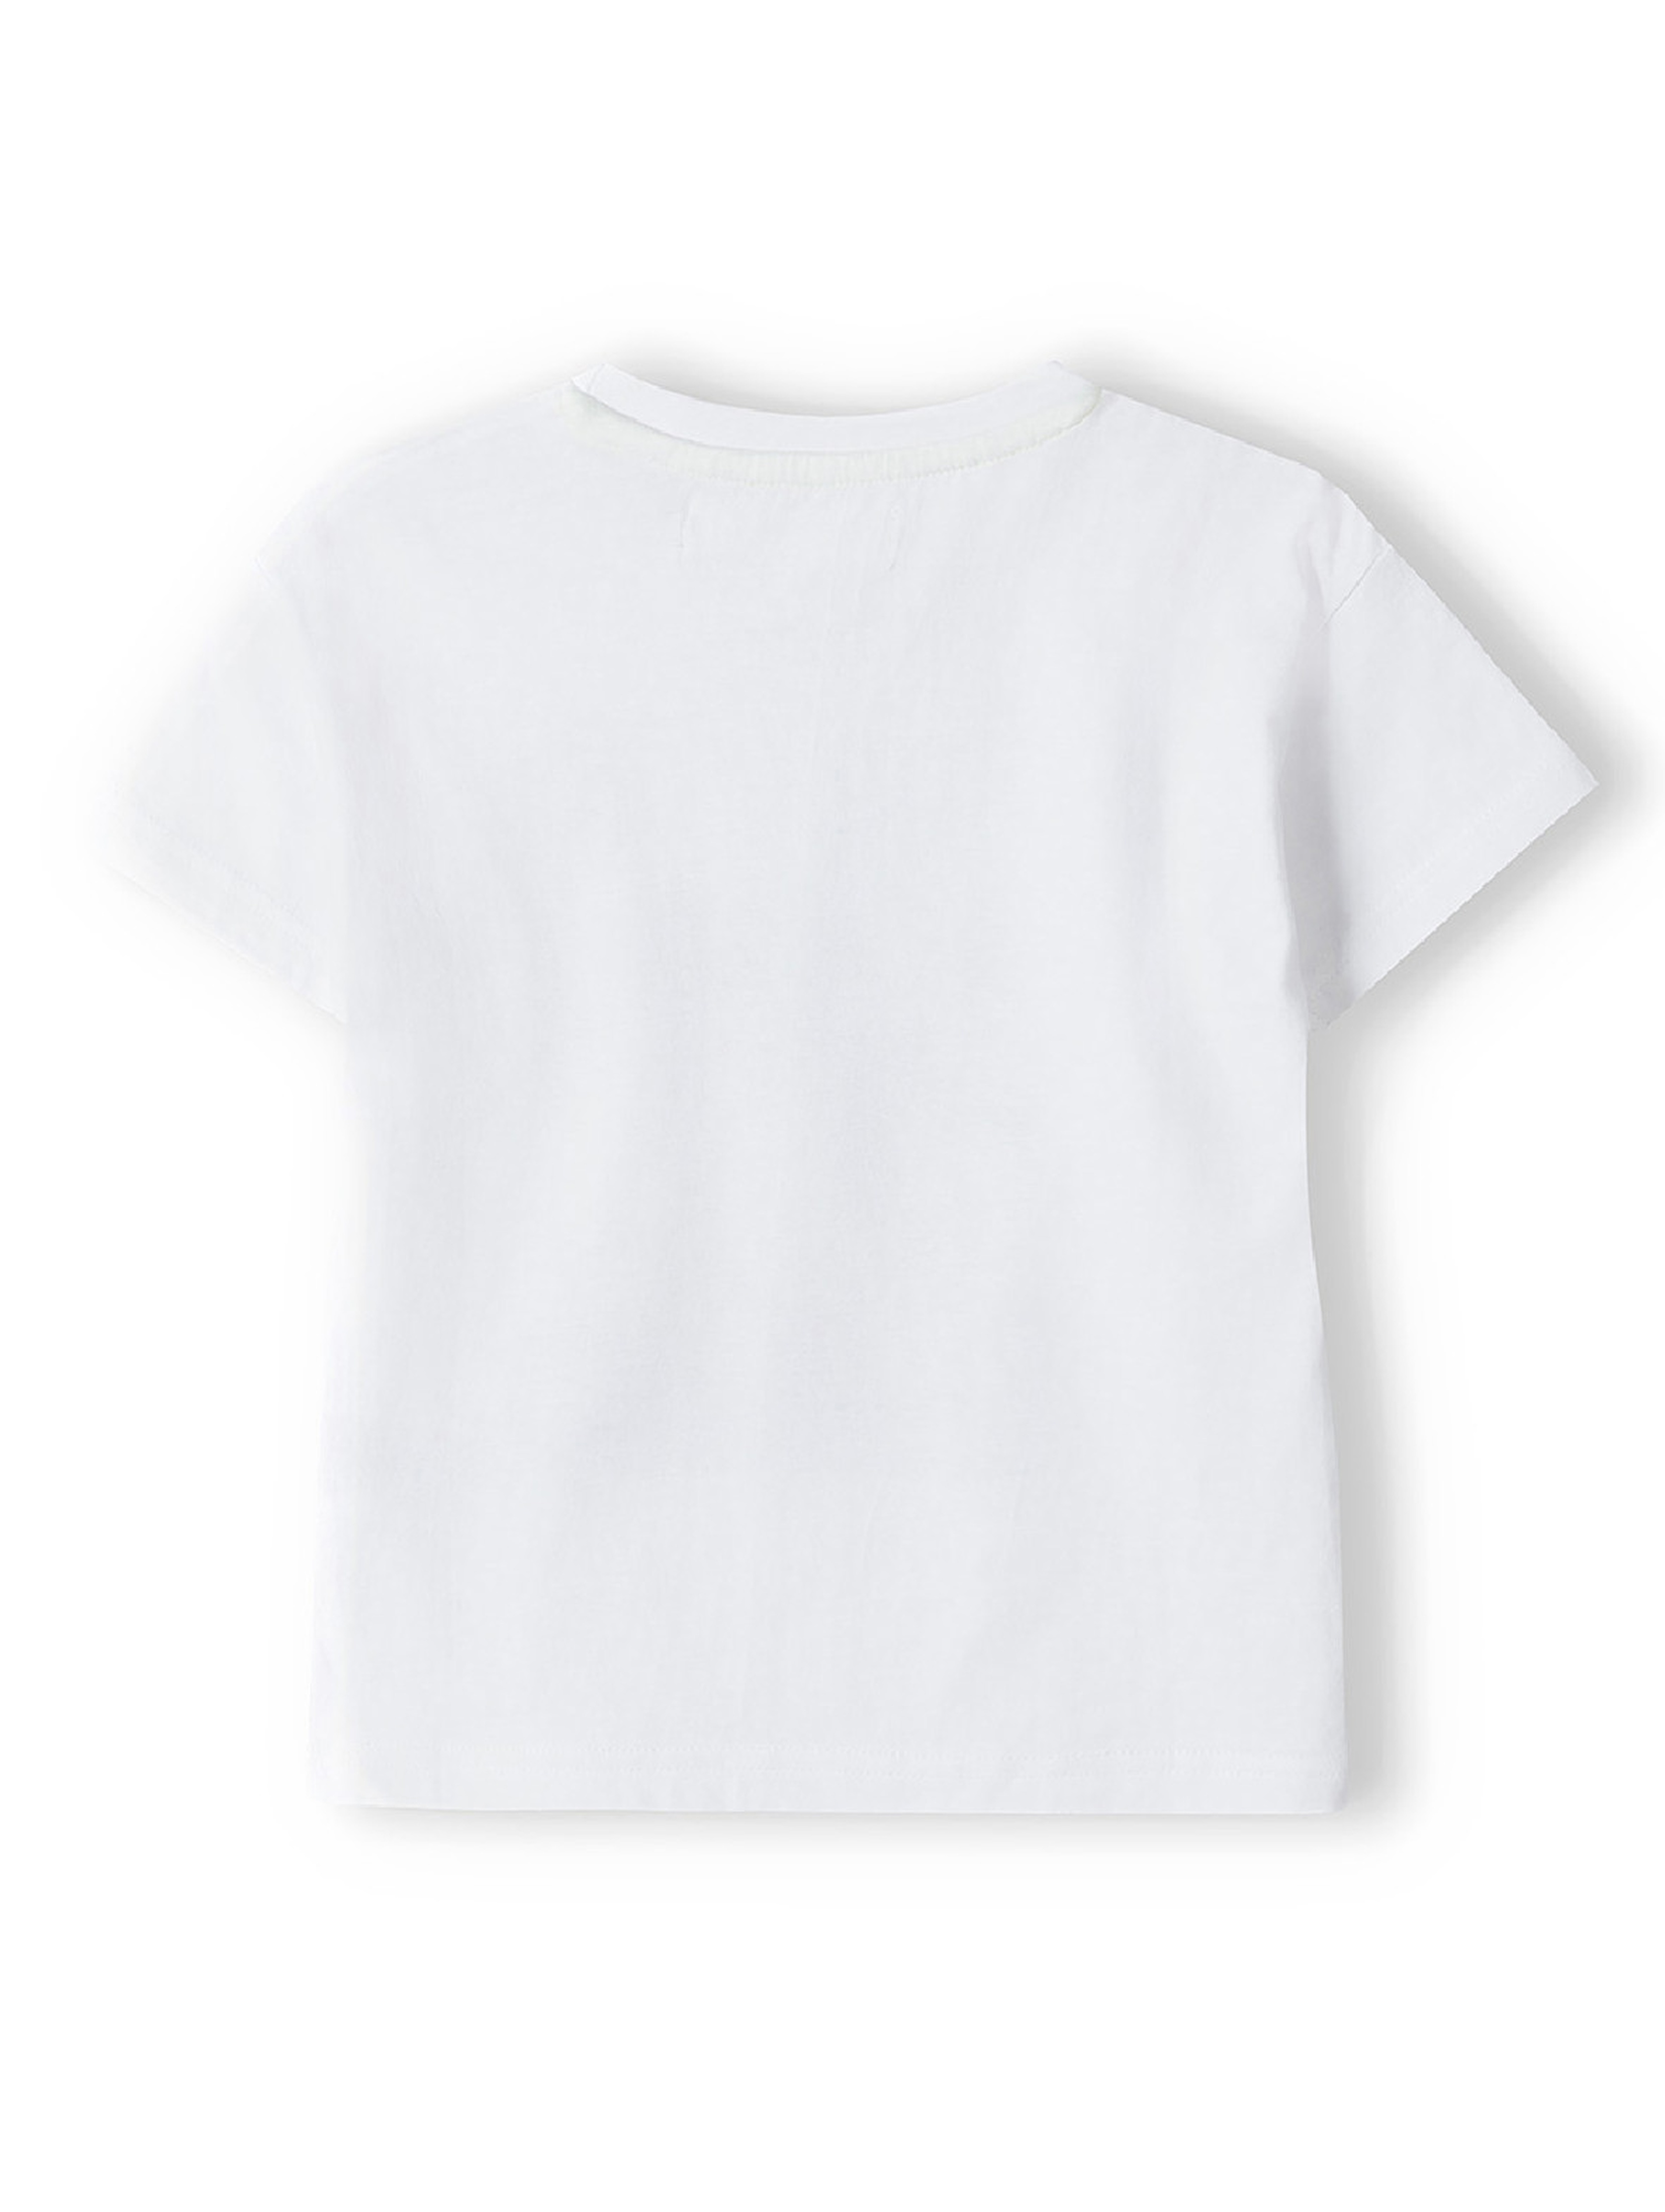 Biały t-shirt z bawełny dla dziewczynki z nadrukiem pieska